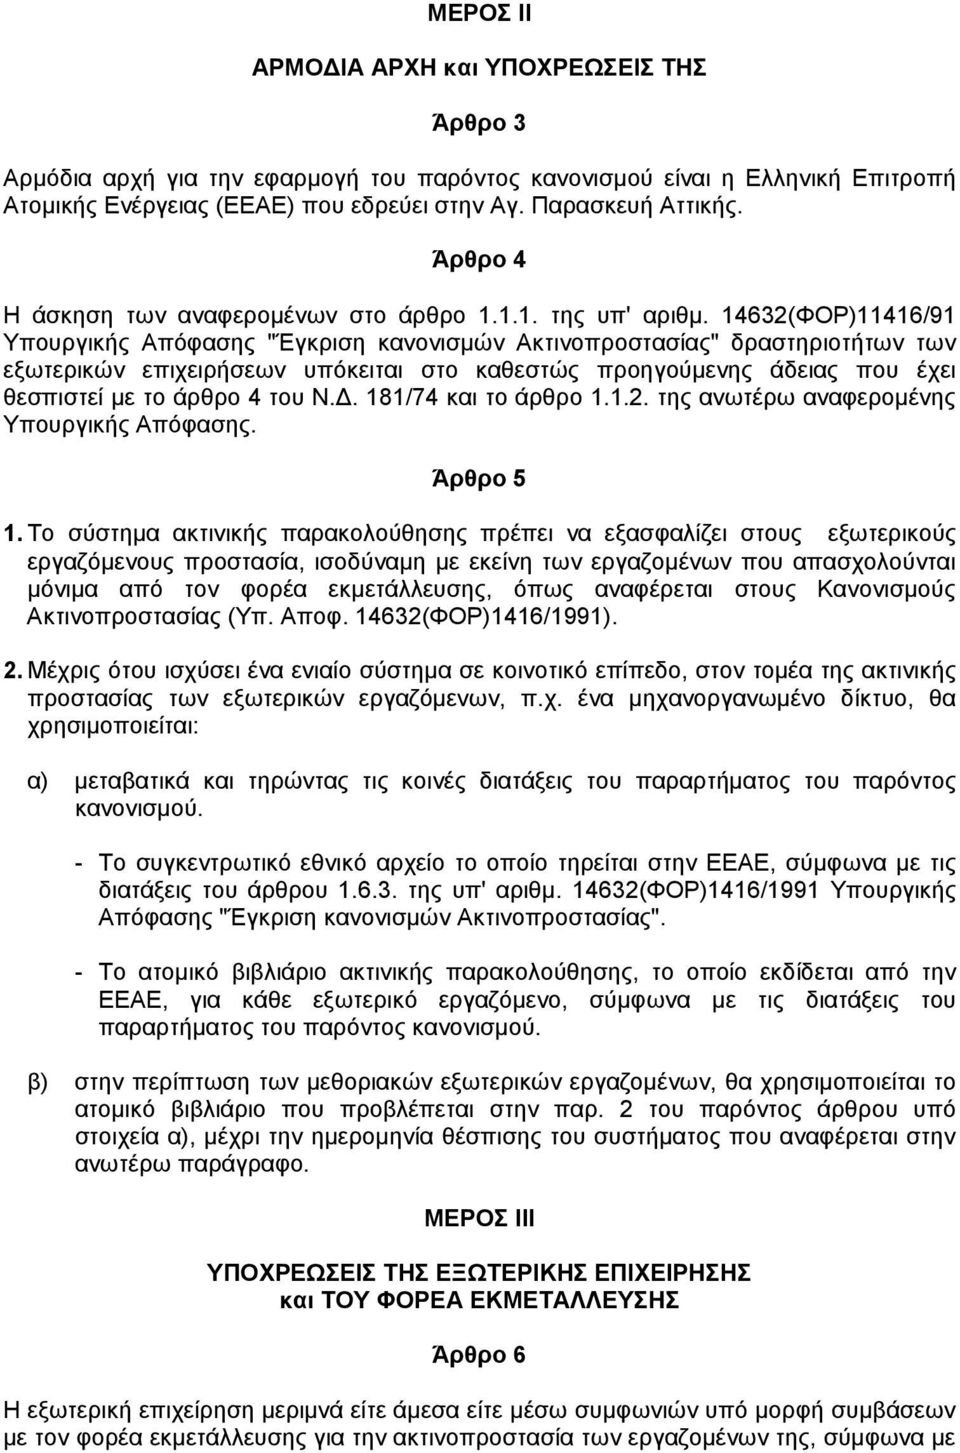 14632(ΦΟΡ)11416/91 Υπουργικής Απόφασης "Έγκριση κανονισµών Ακτινοπροστασίας" δραστηριοτήτων των εξωτερικών επιχειρήσεων υπόκειται στο καθεστώς προηγούµενης άδειας που έχει θεσπιστεί µε το άρθρο 4 του